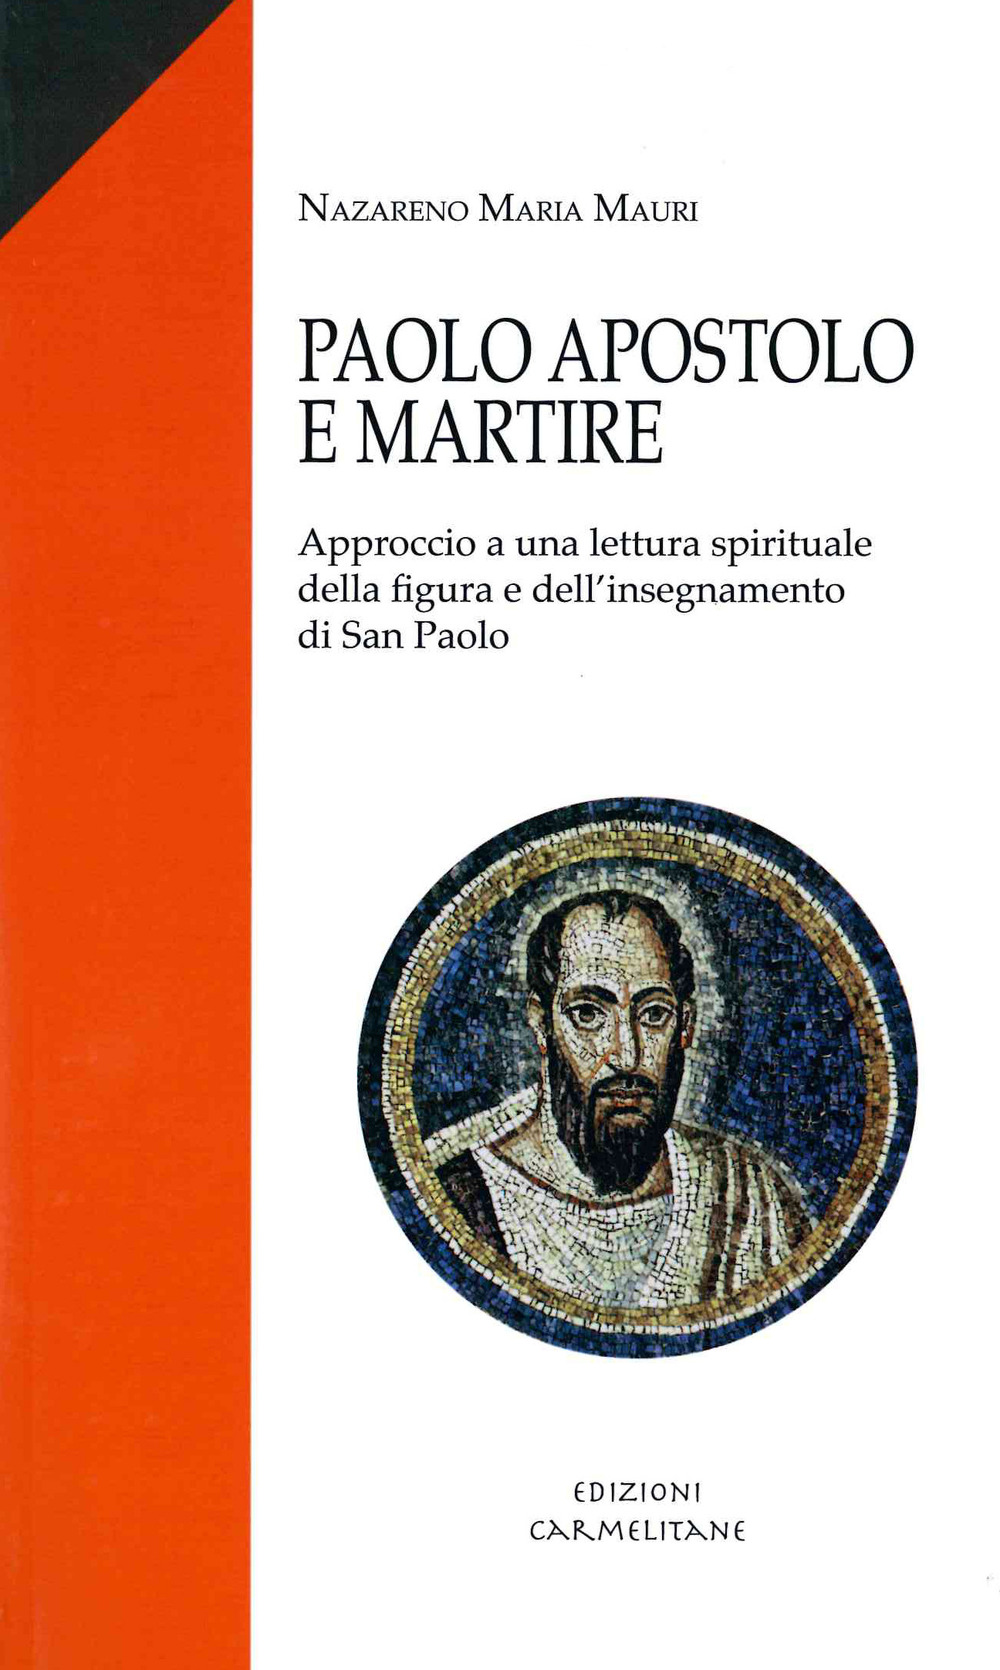 Paolo apostolo e martire. Approccio a una lettura spirituale della figura e dell'insegnamento di san Paolo